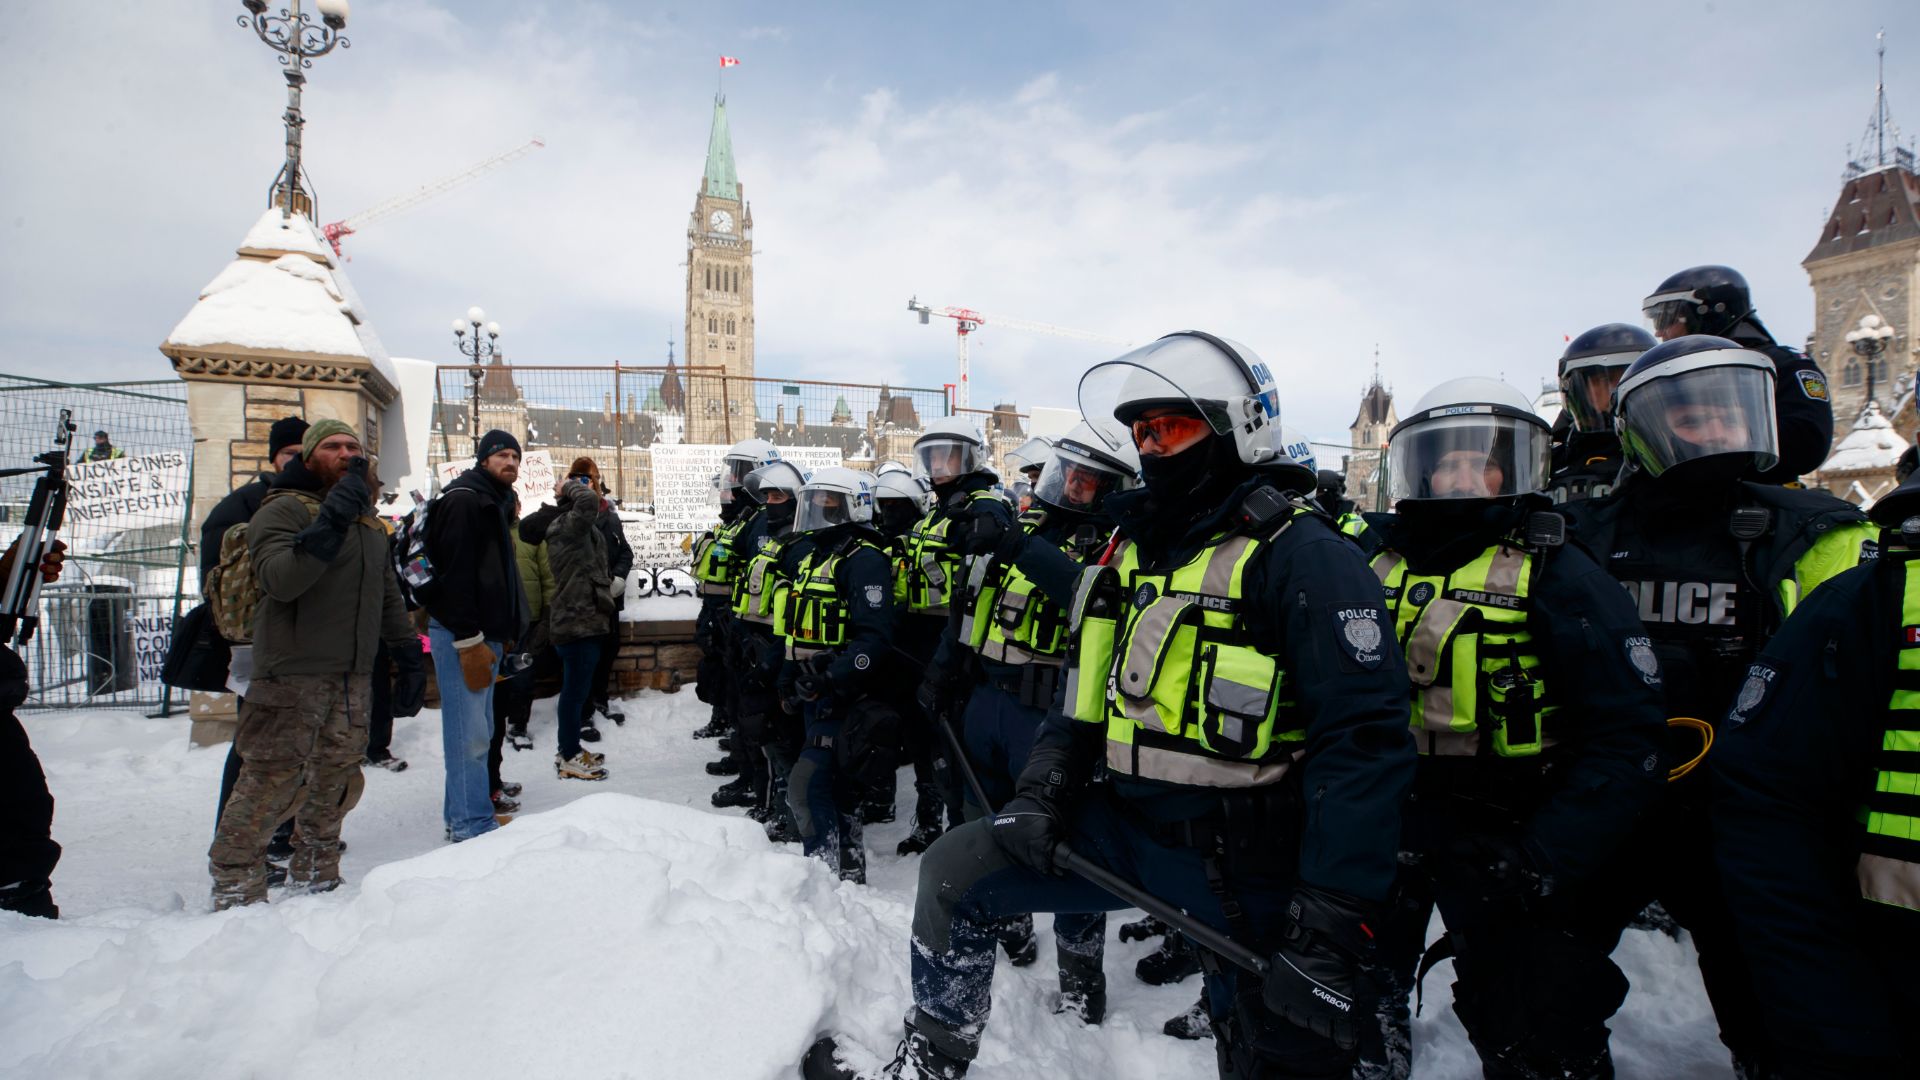 Les leaders du convoi de manifestants ayant paralysé le centre-ville d'Ottawa l'hiver dernier, incluant Pat King et Tamara Lich, sont aussi attendus devant la Commission.